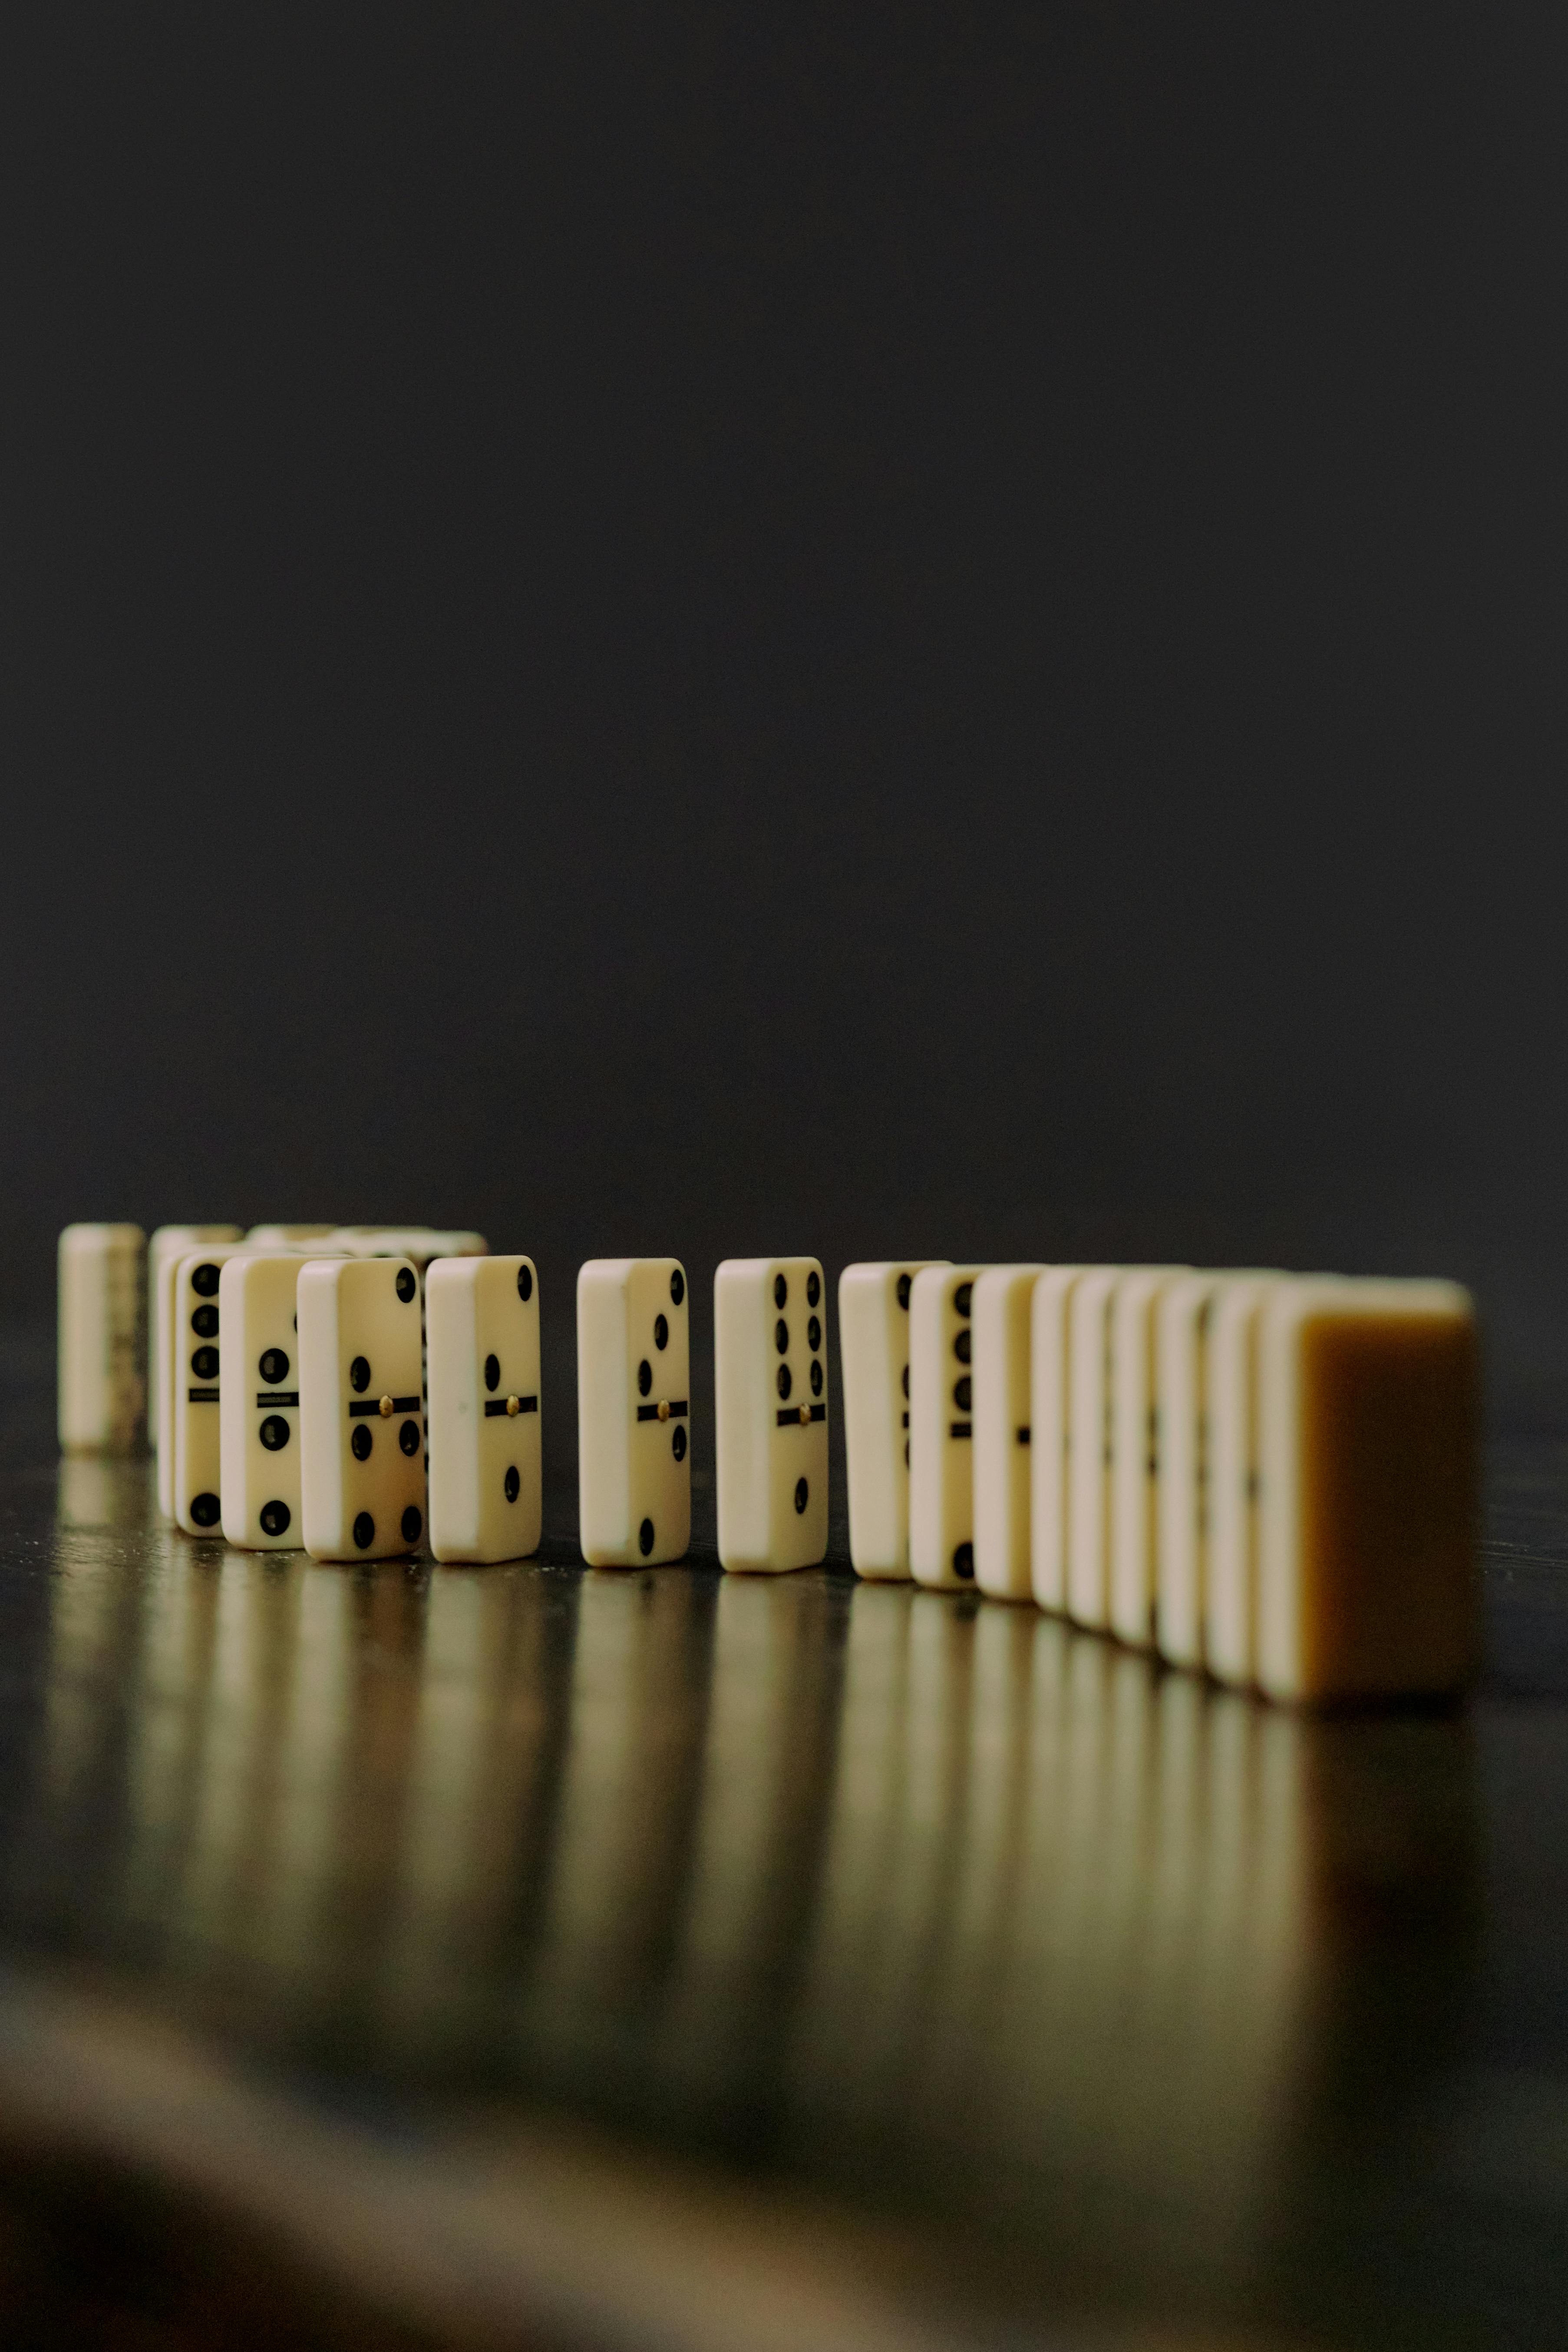 Dominoes | Source: Pexels